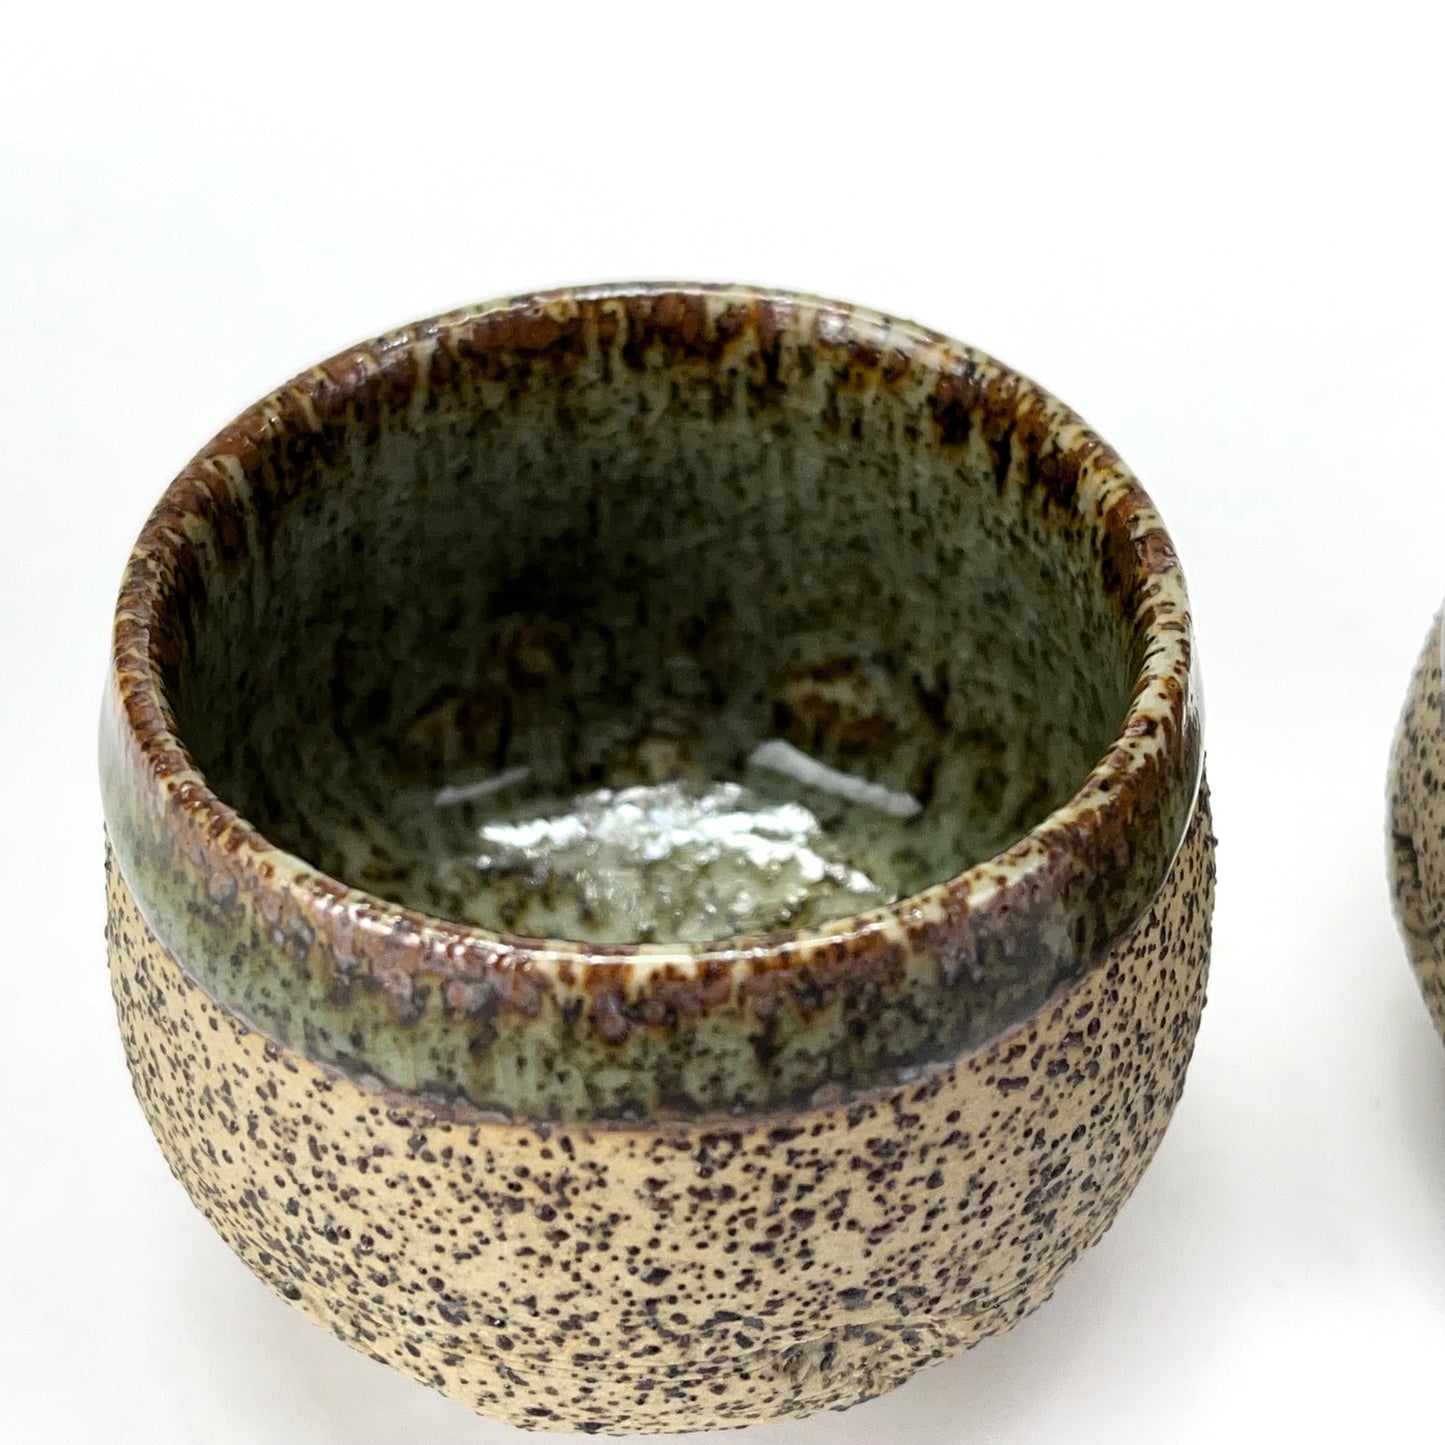 Japanese Set of Ceramic Sakazuki Sake Cup Green Glaze Rim 1” Tall